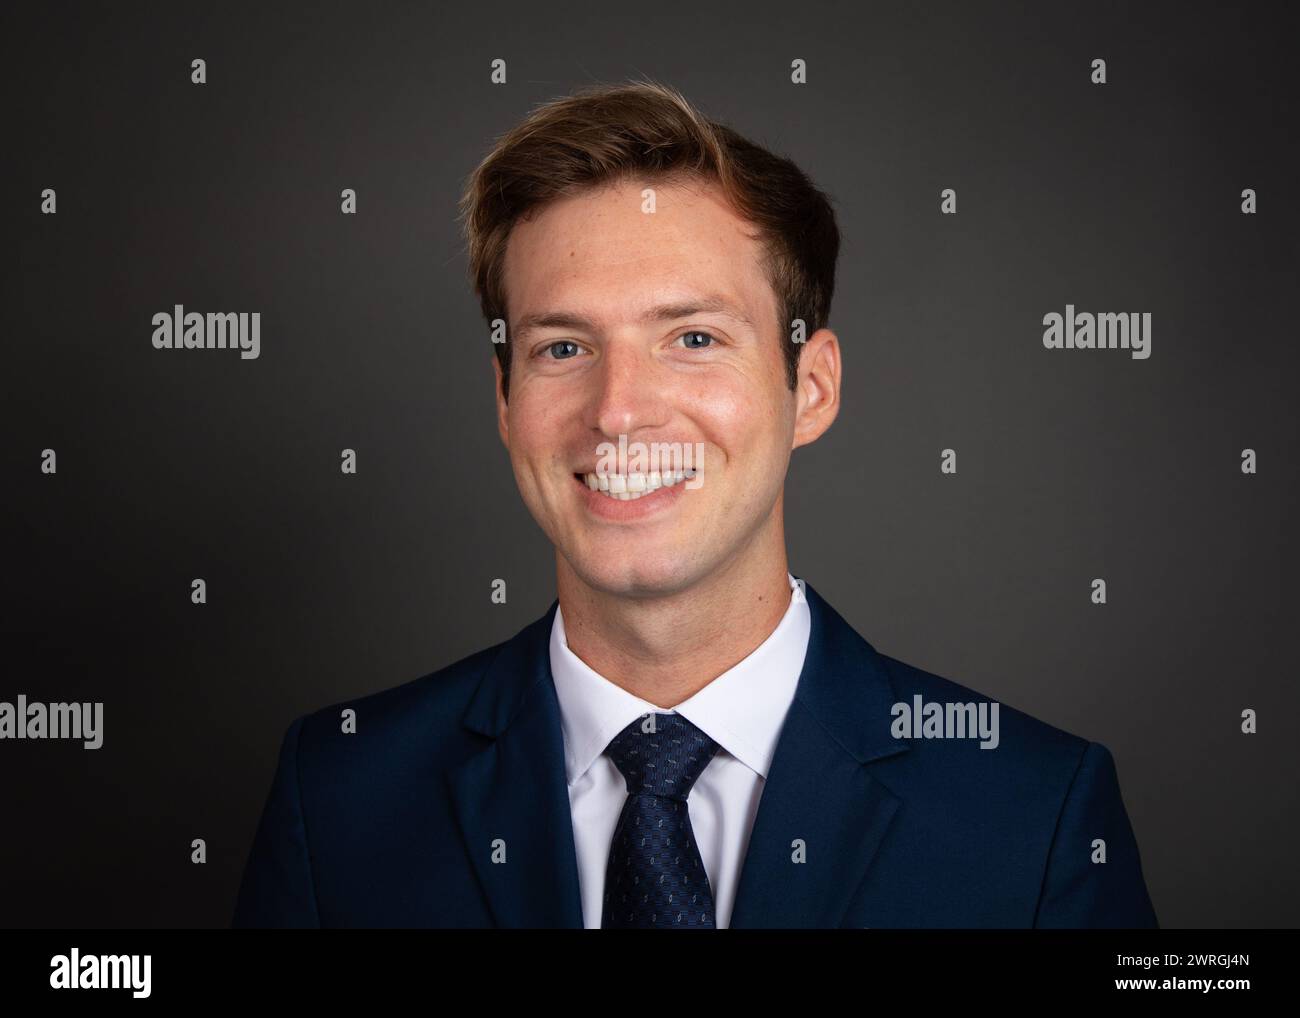 Portrait d'un homme d'affaires souriant dans un costume sur un fond gris Banque D'Images